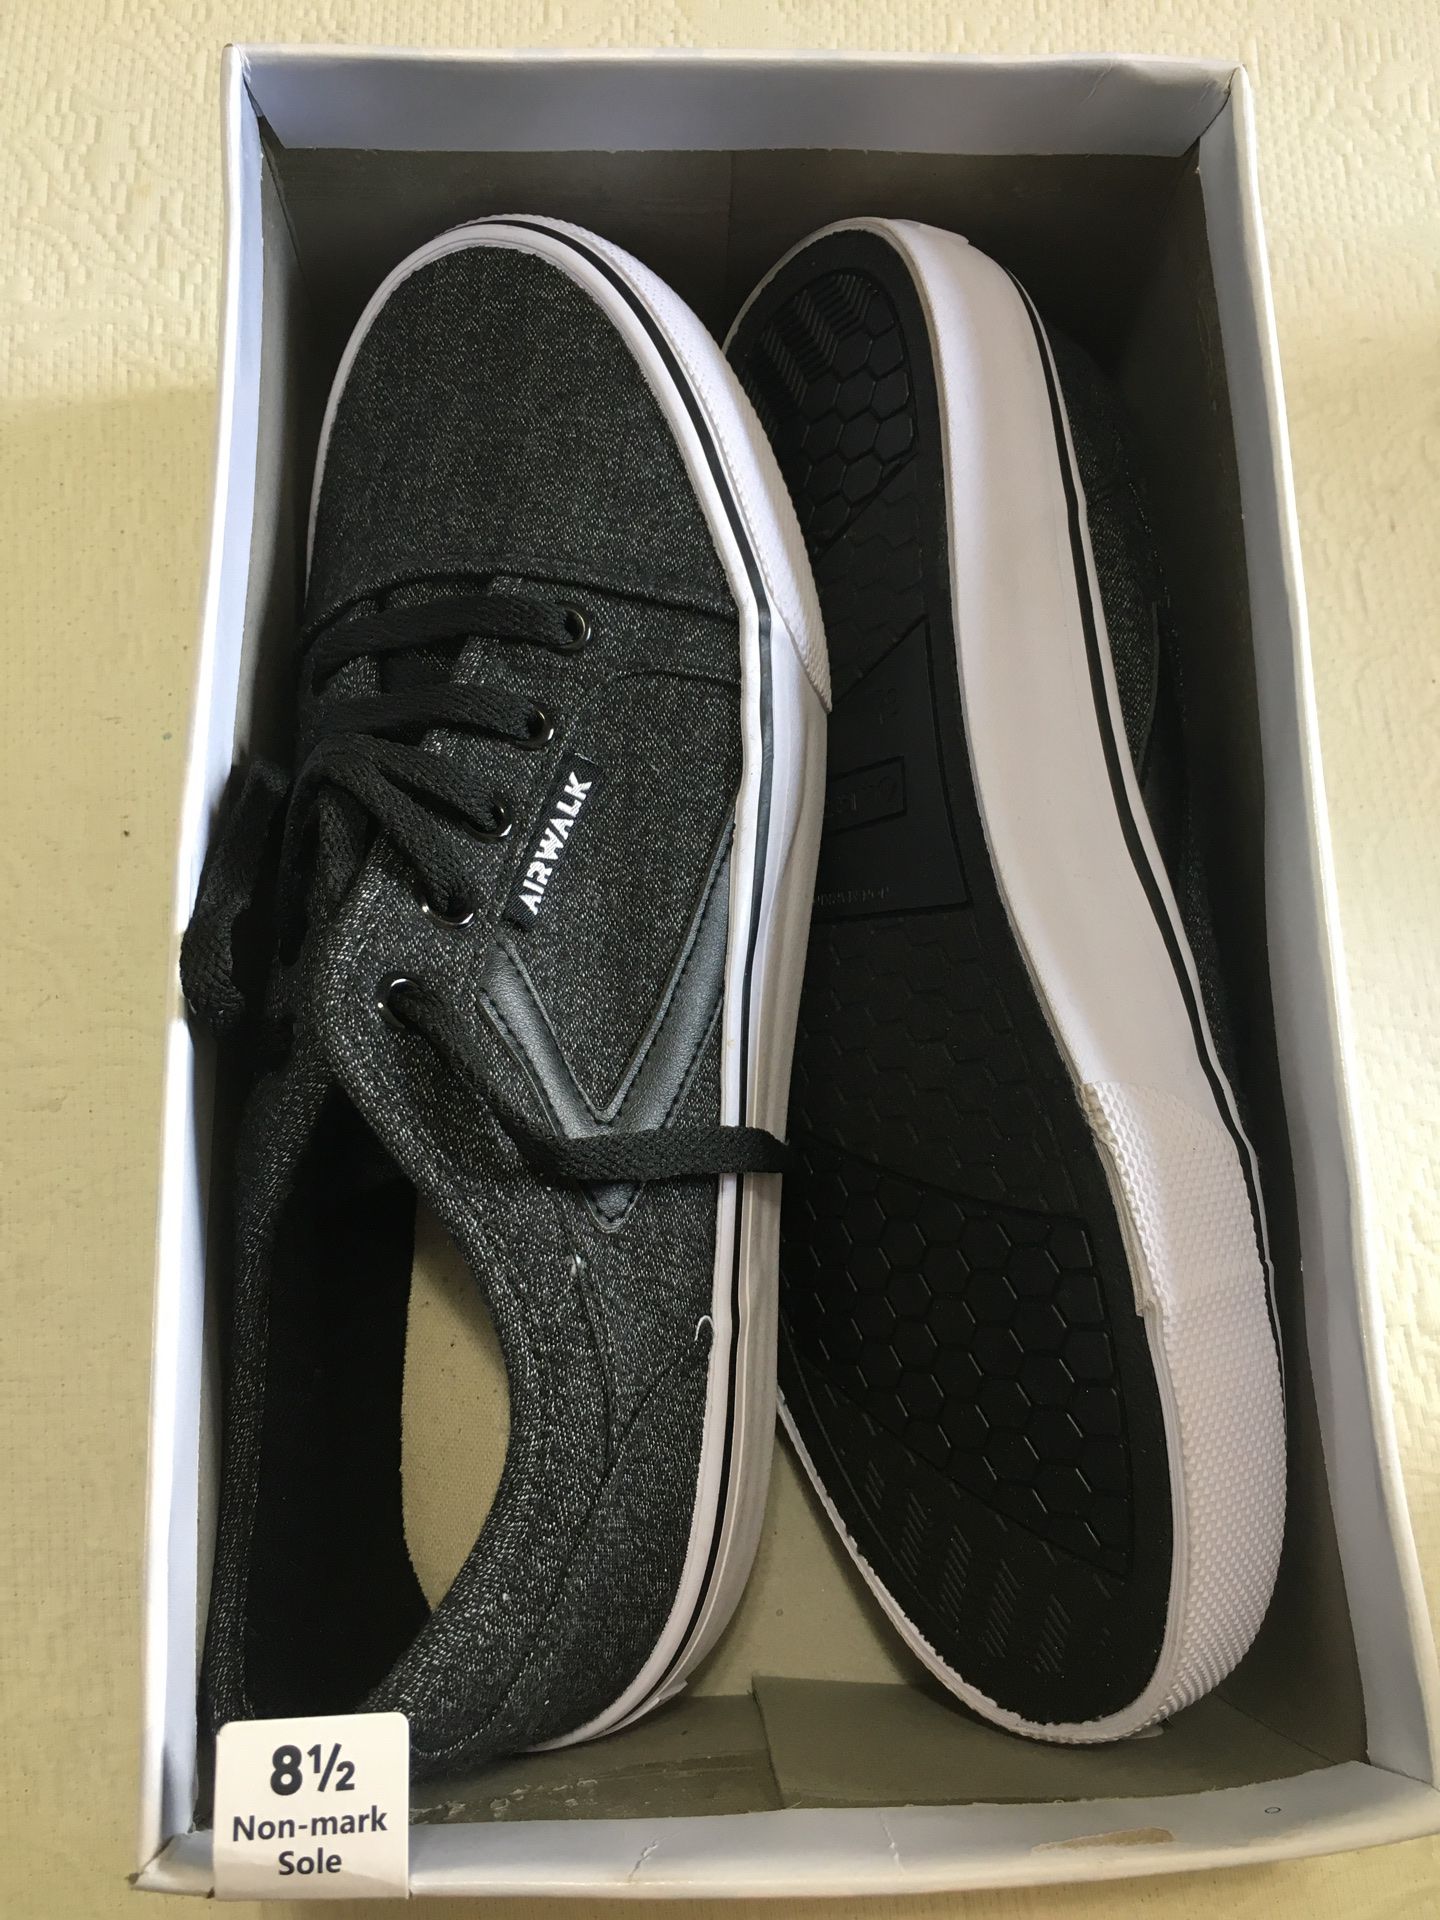 Men’s size 8 1/2 white black gray or white sneaker brand new never used